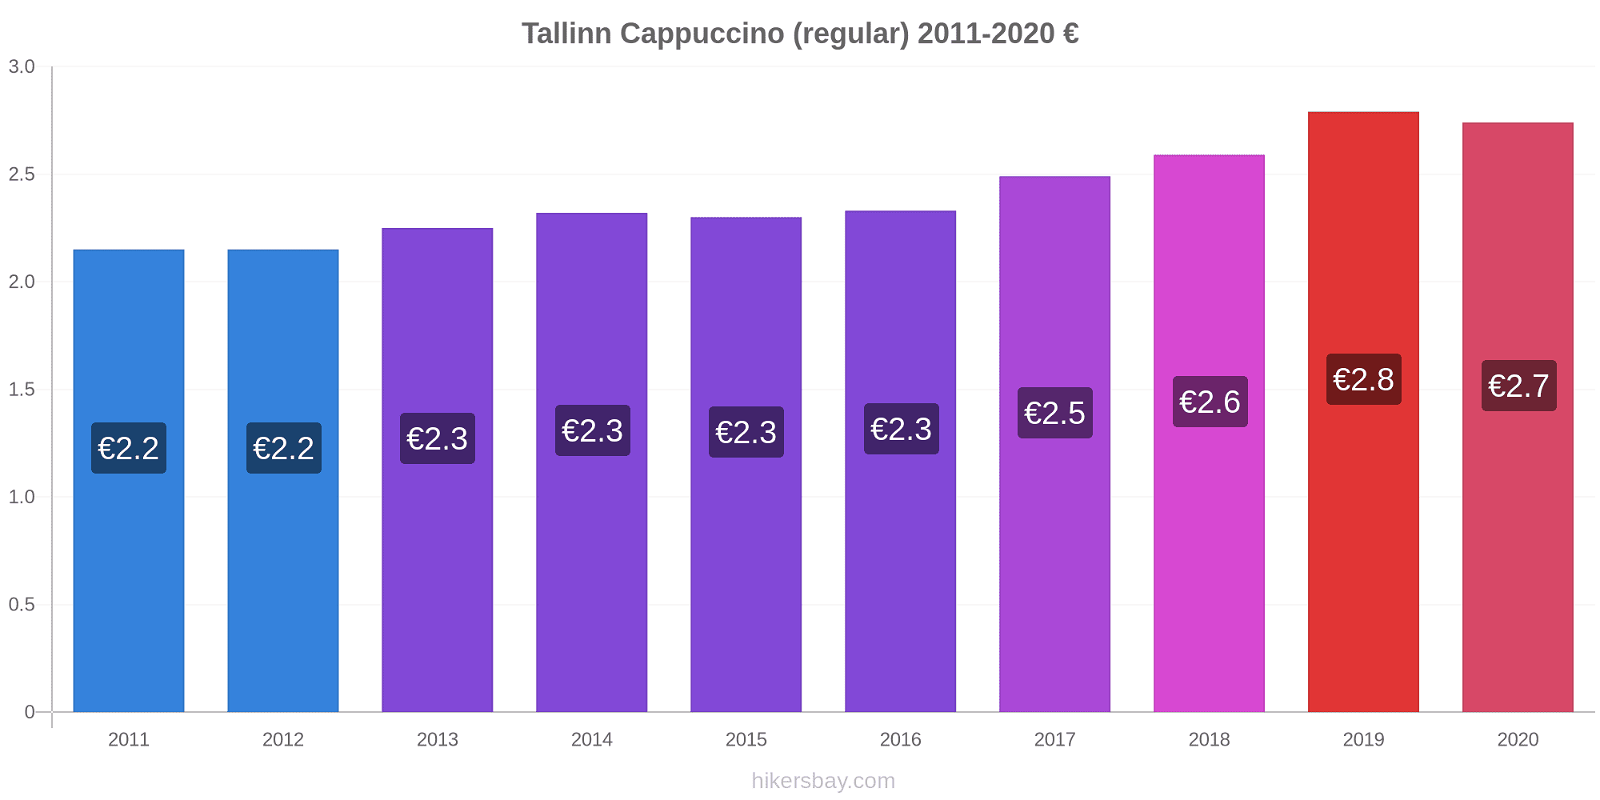 Tallinn variação de preço Capuccino (regular) hikersbay.com